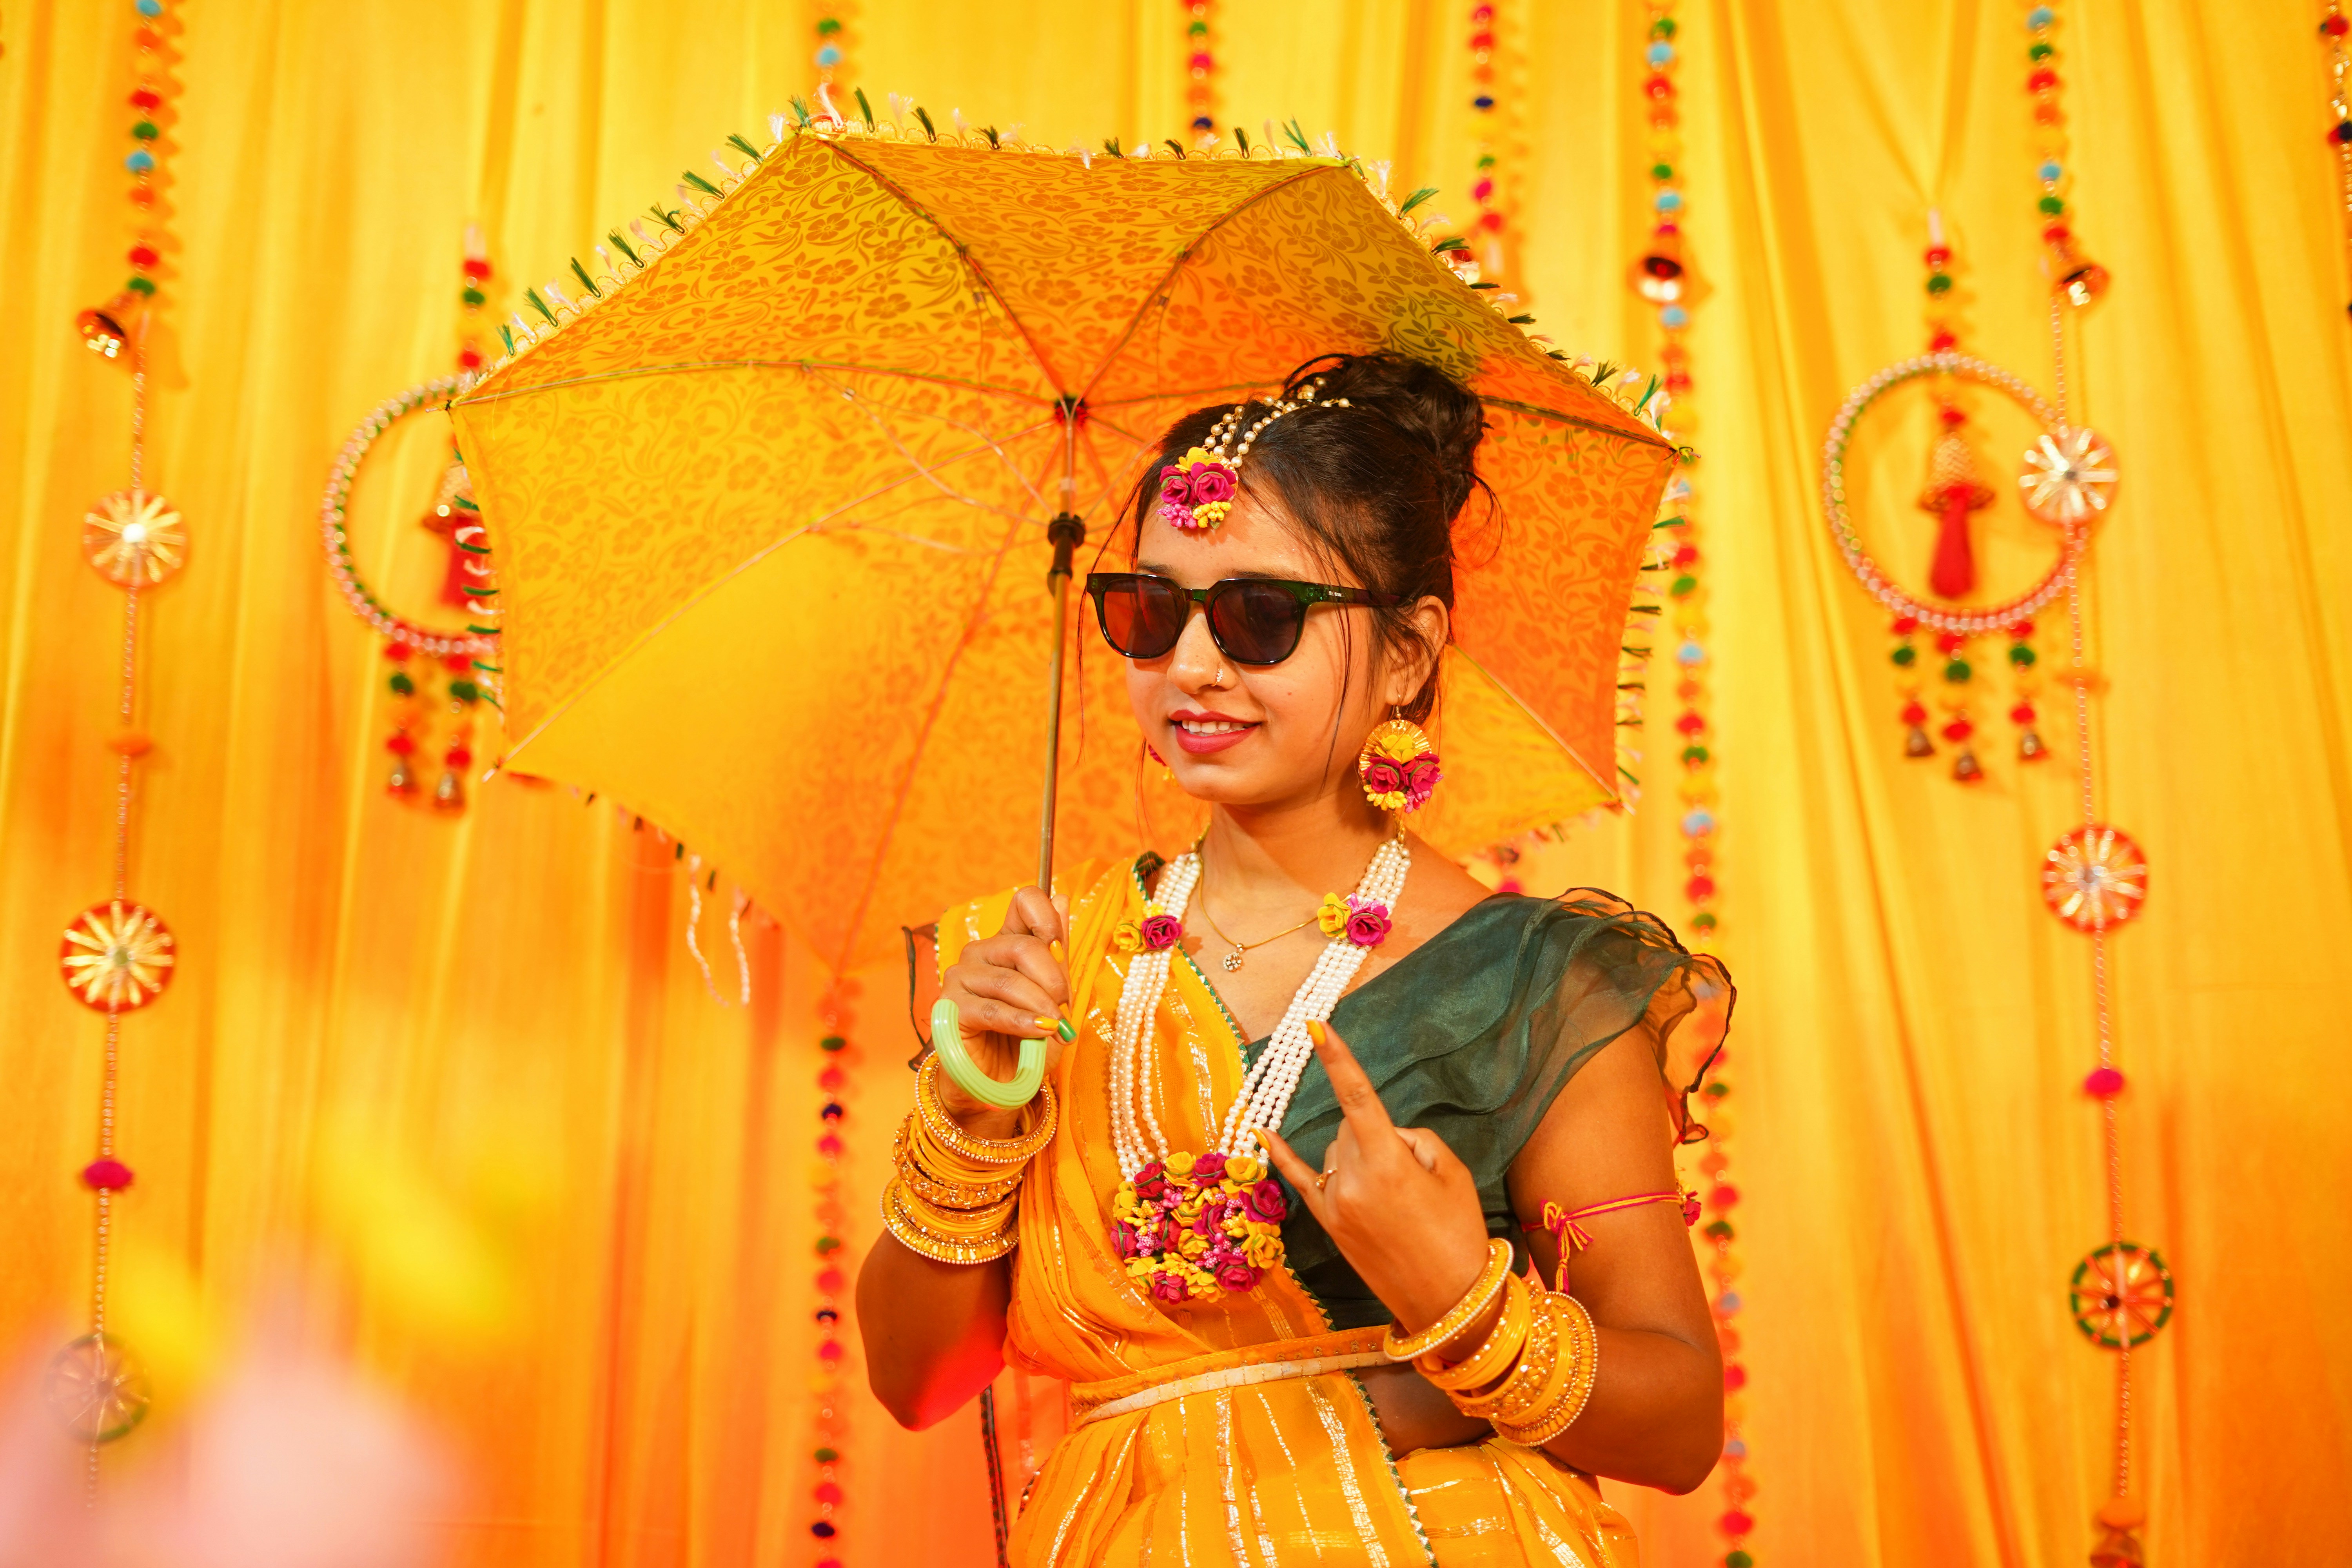 Haldi ceremony traditional Indian bride